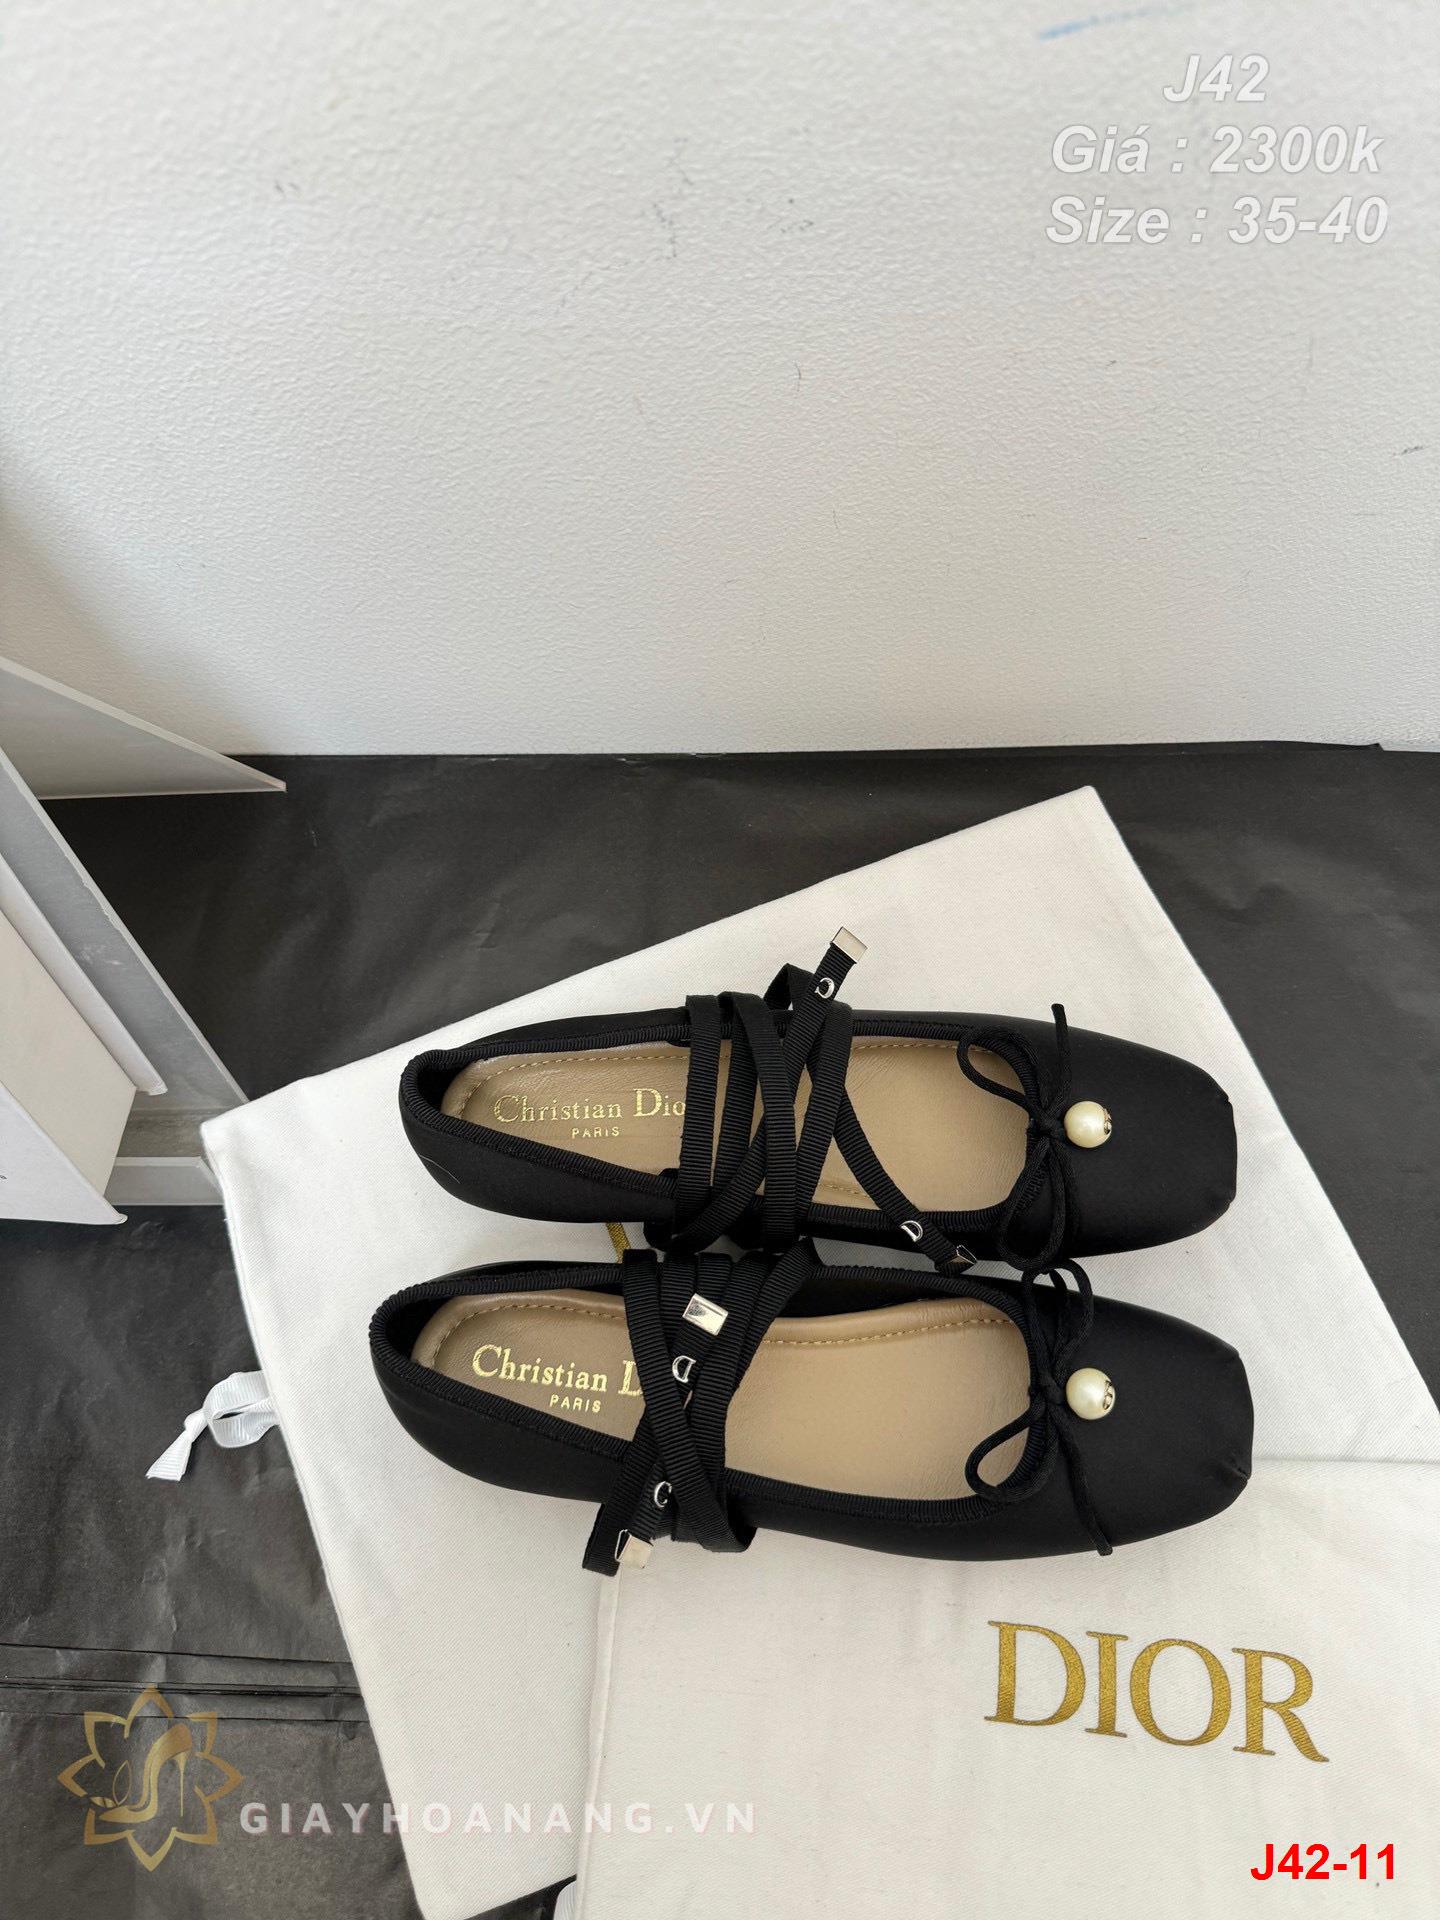 J42-11 Dior giày bệt siêu cấp